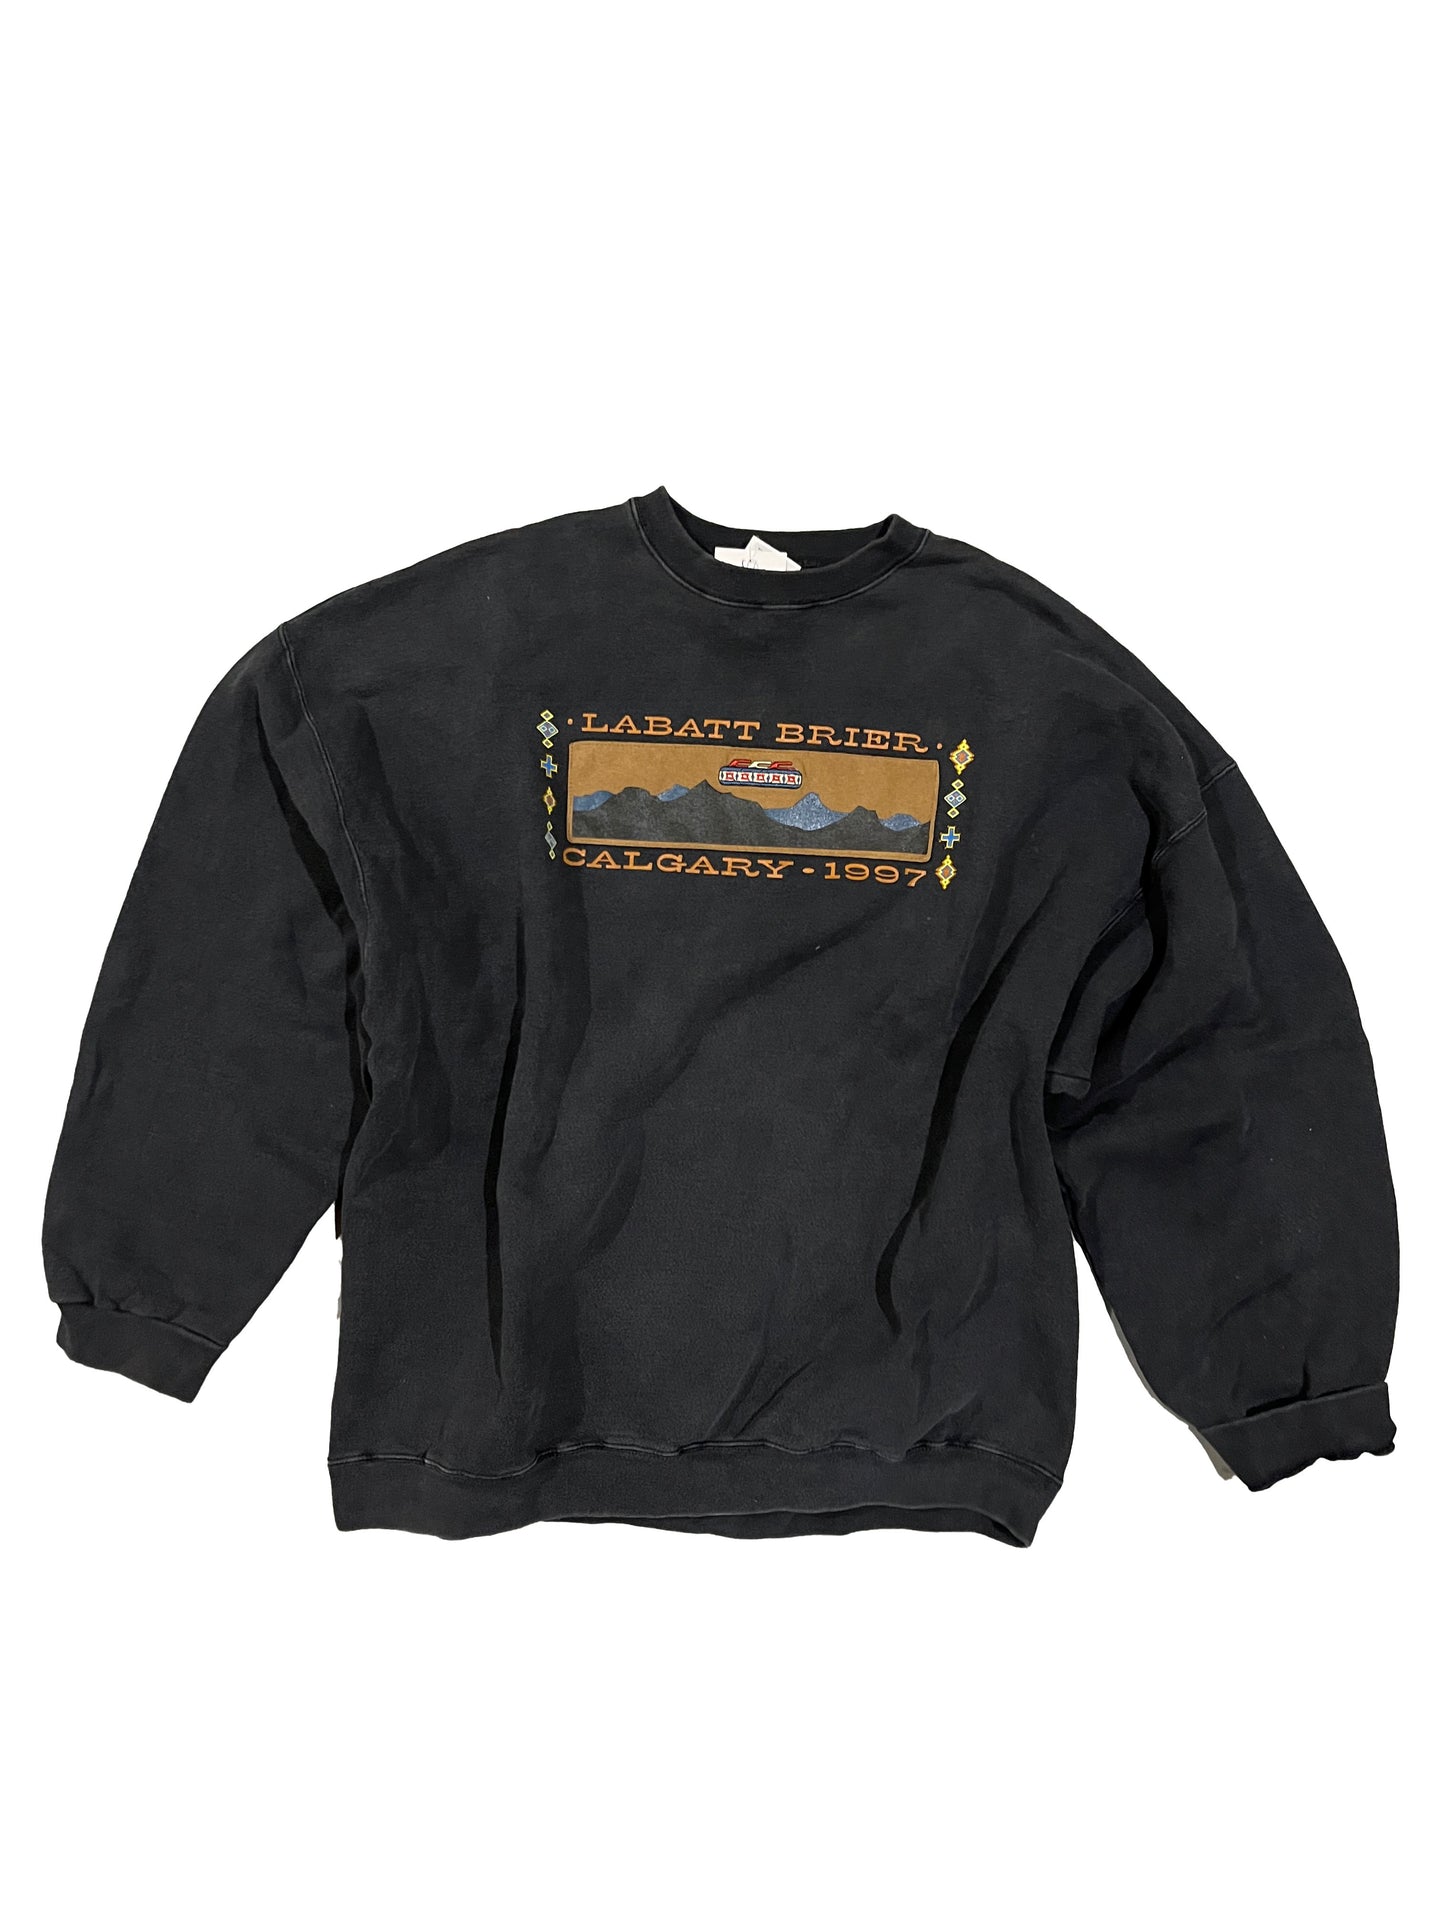 Heavyweight Vintage 90's Labatt Brier Sweatshirt